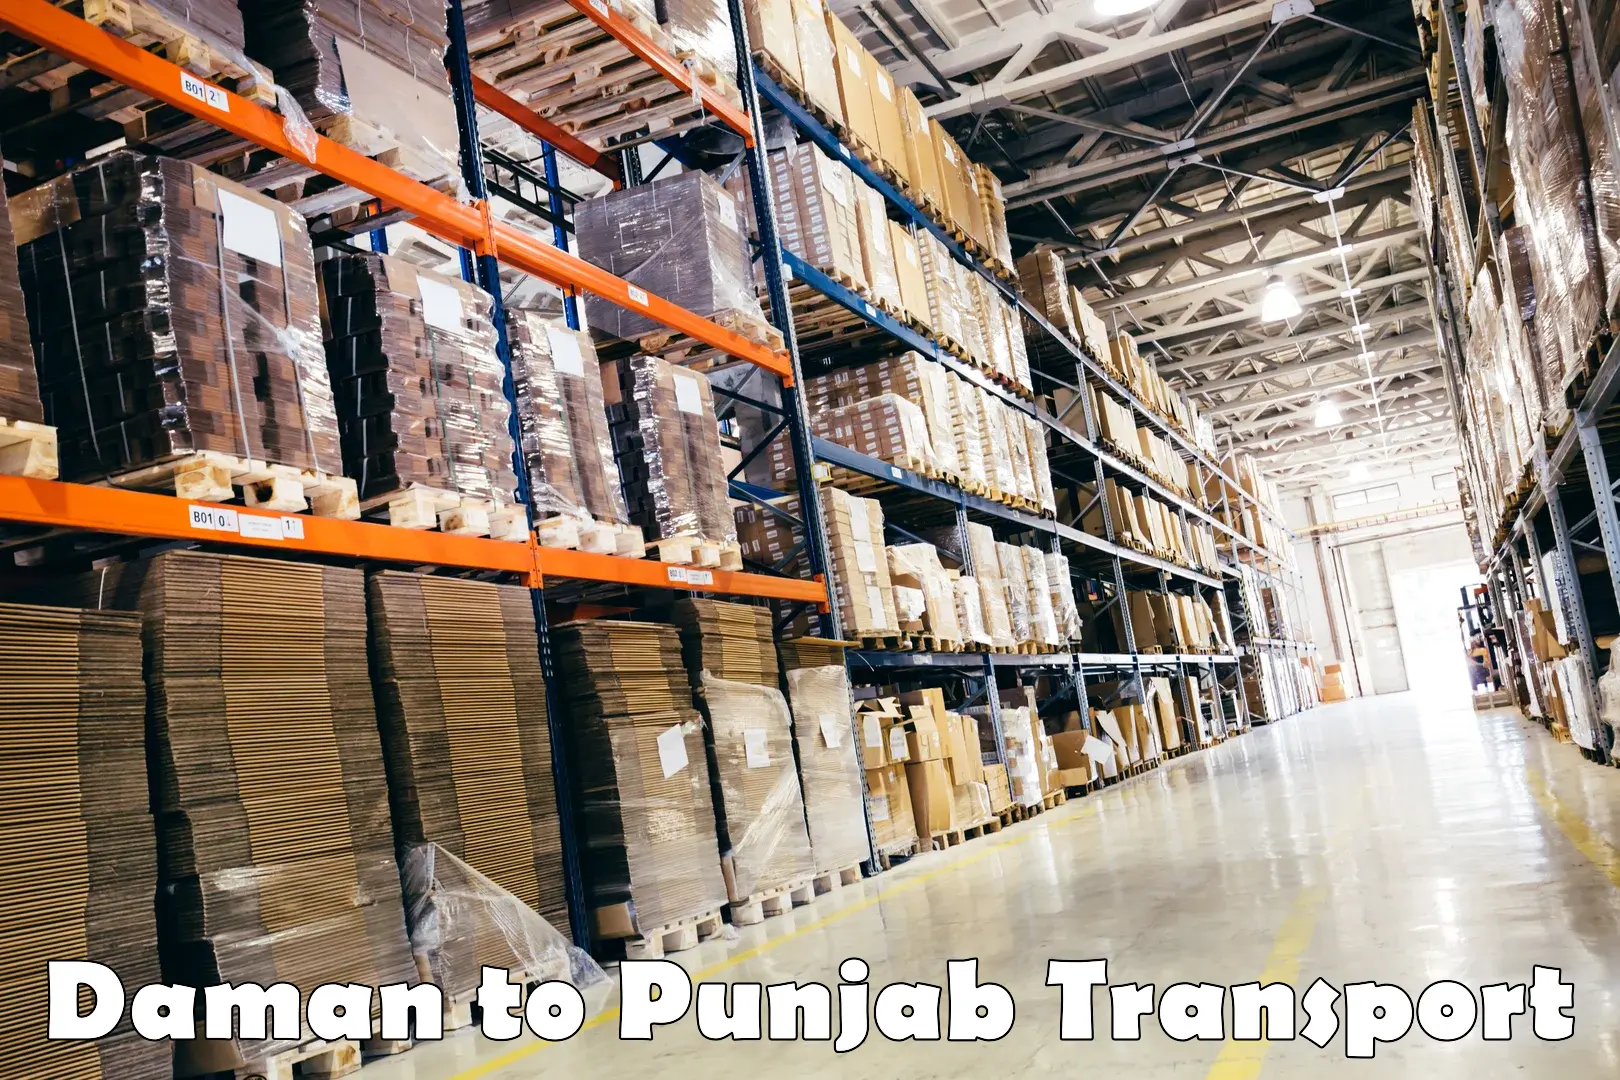 Pick up transport service Daman to Punjab